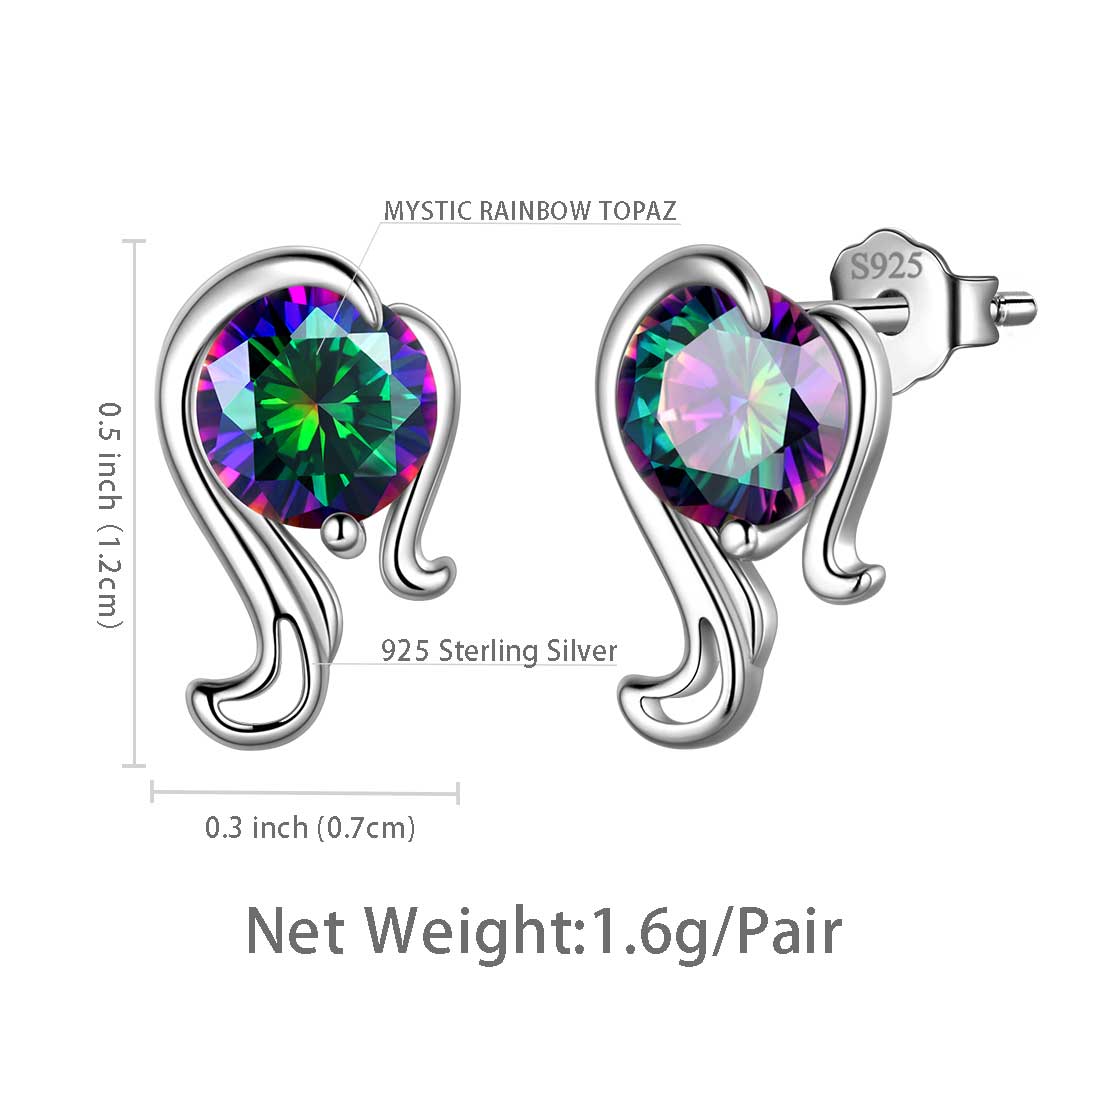 Virgo Stud Earrings Sterling Silver Mystic Rainbow Topaz - Earrings - Aurora Tears Jewelry